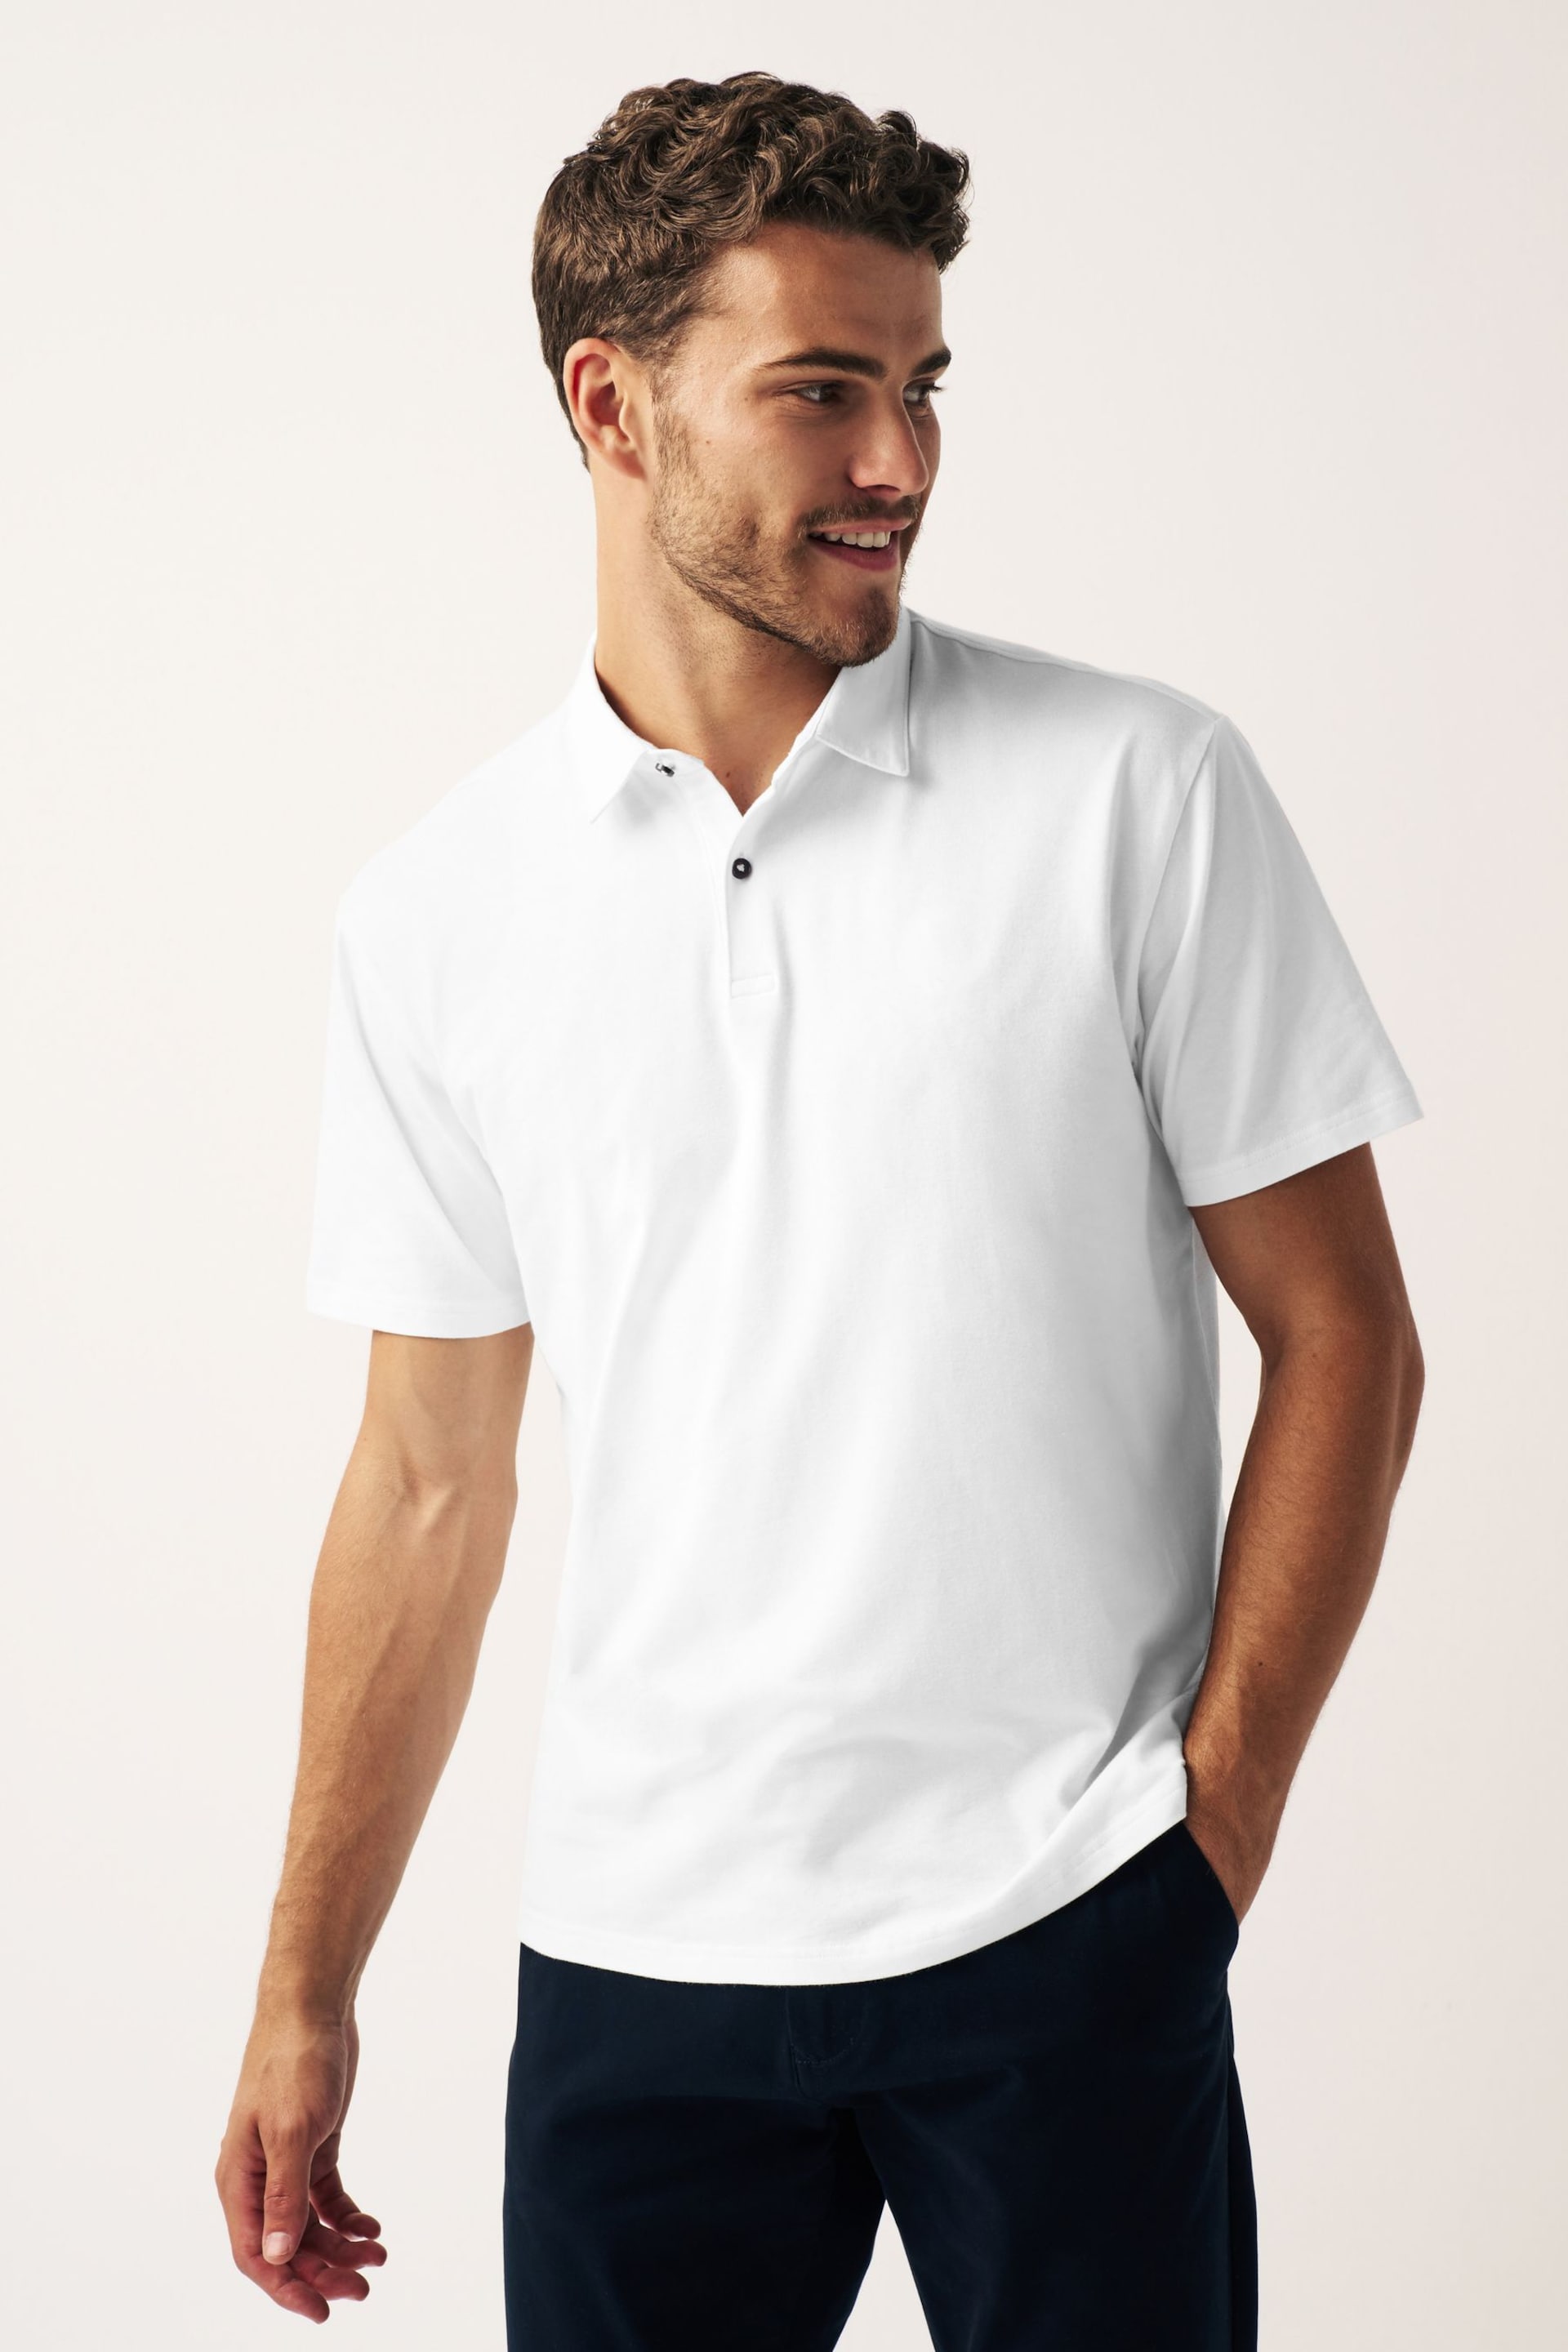 White Short Sleeve Polo Shirt - Image 1 of 6